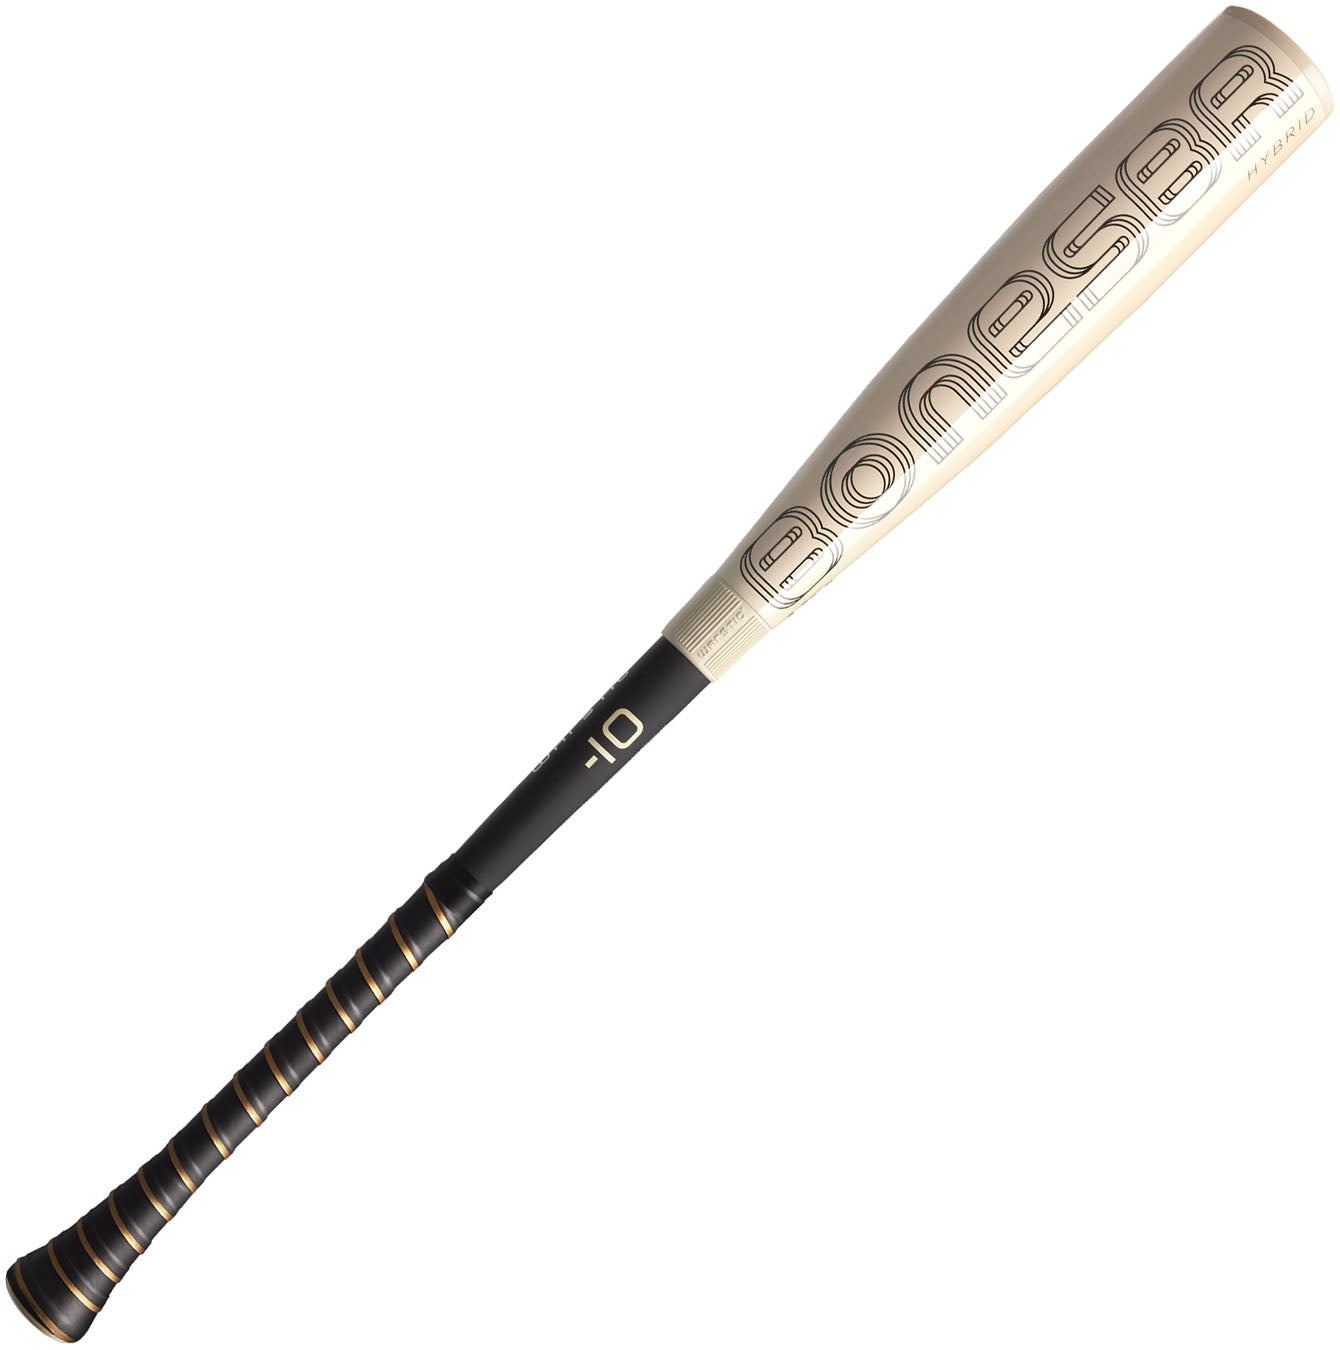 Warstic Bonesaber Hybrid USA Metal Baseball Bat -10